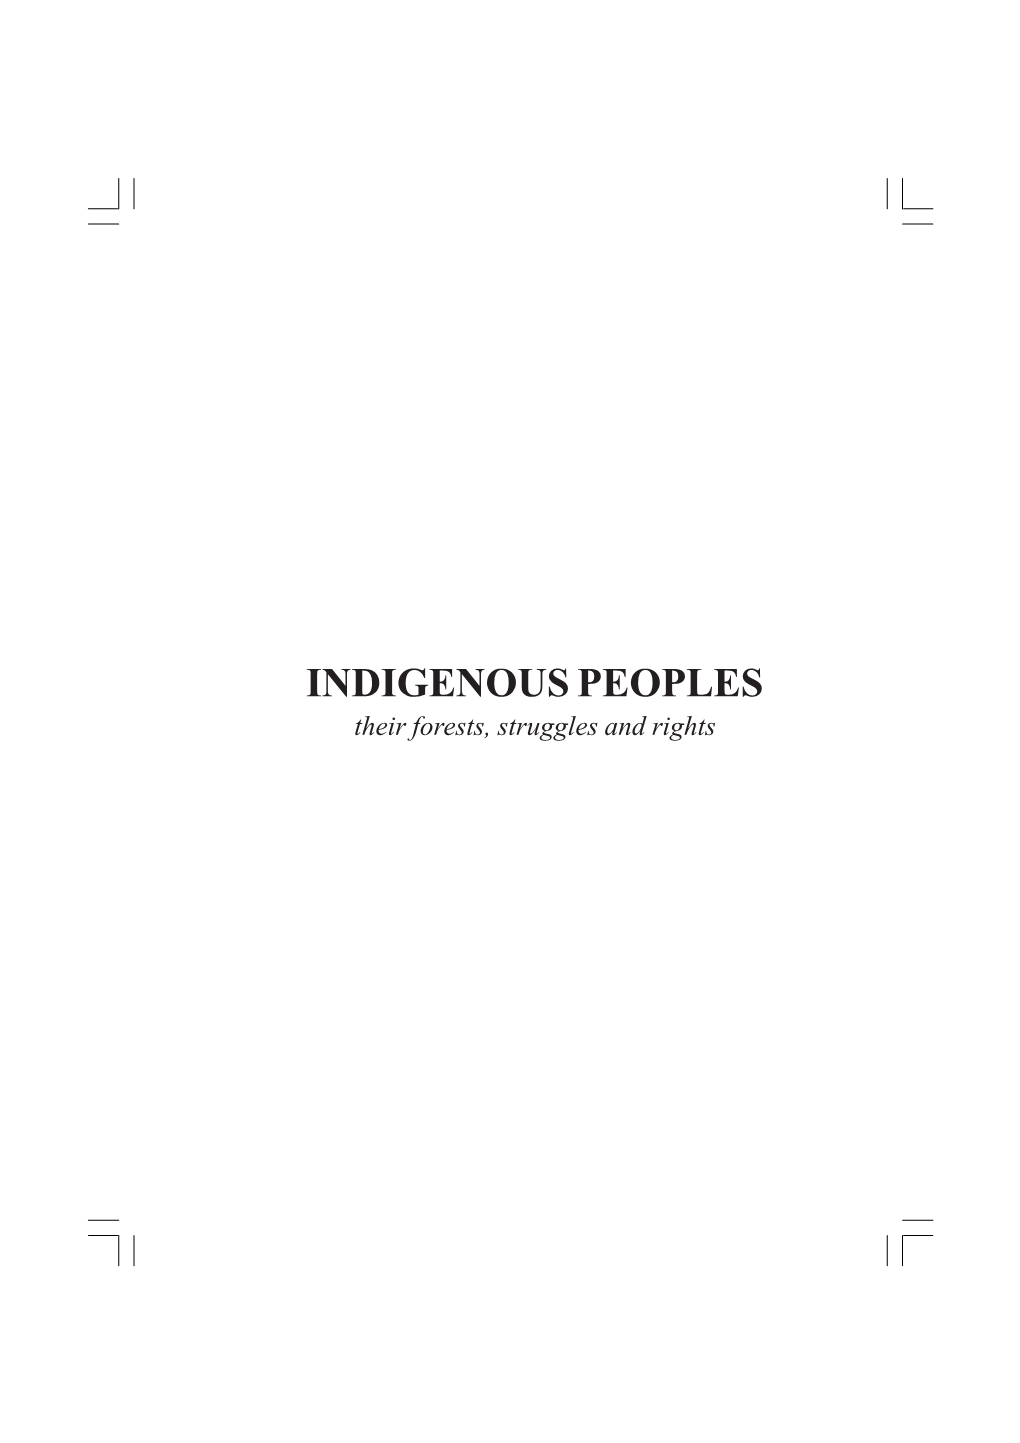 Pueblos Indigenas Inglés.P65